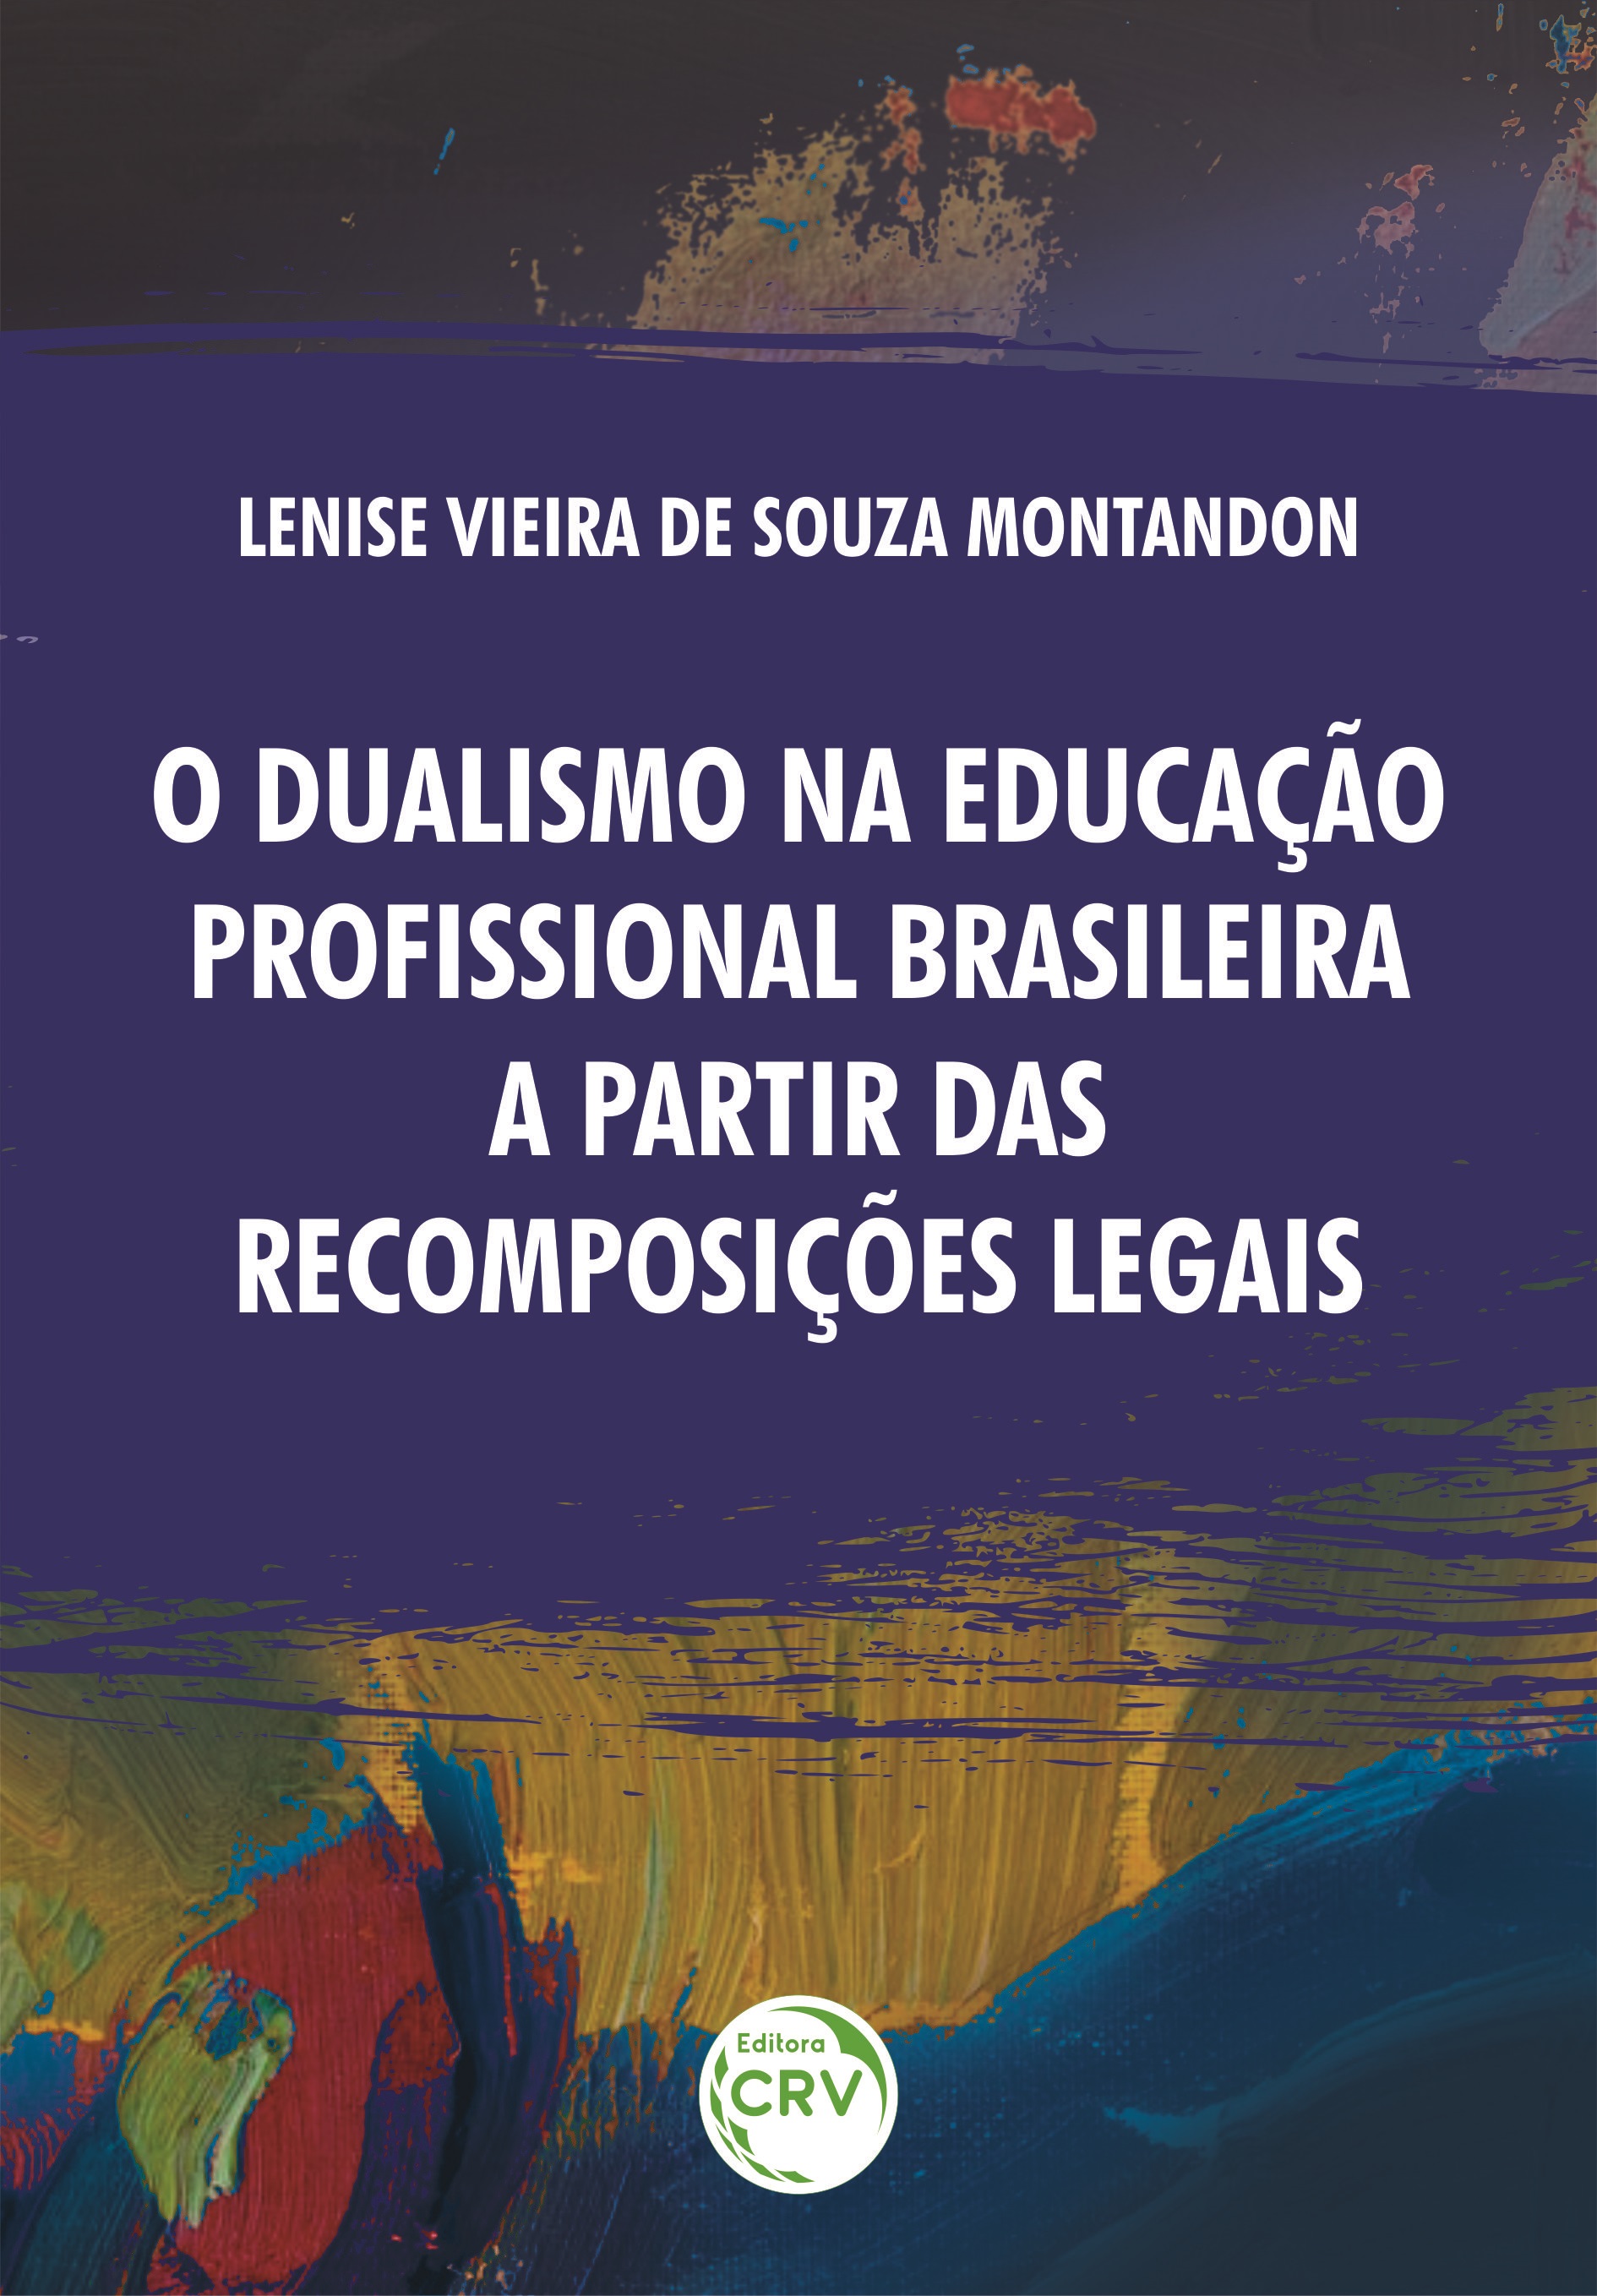 Capa do livro: O DUALISMO NA EDUCAÇÃO PROFISSIONAL BRASILEIRA A PARTIR DAS RECOMPOSIÇÕES LEGAIS